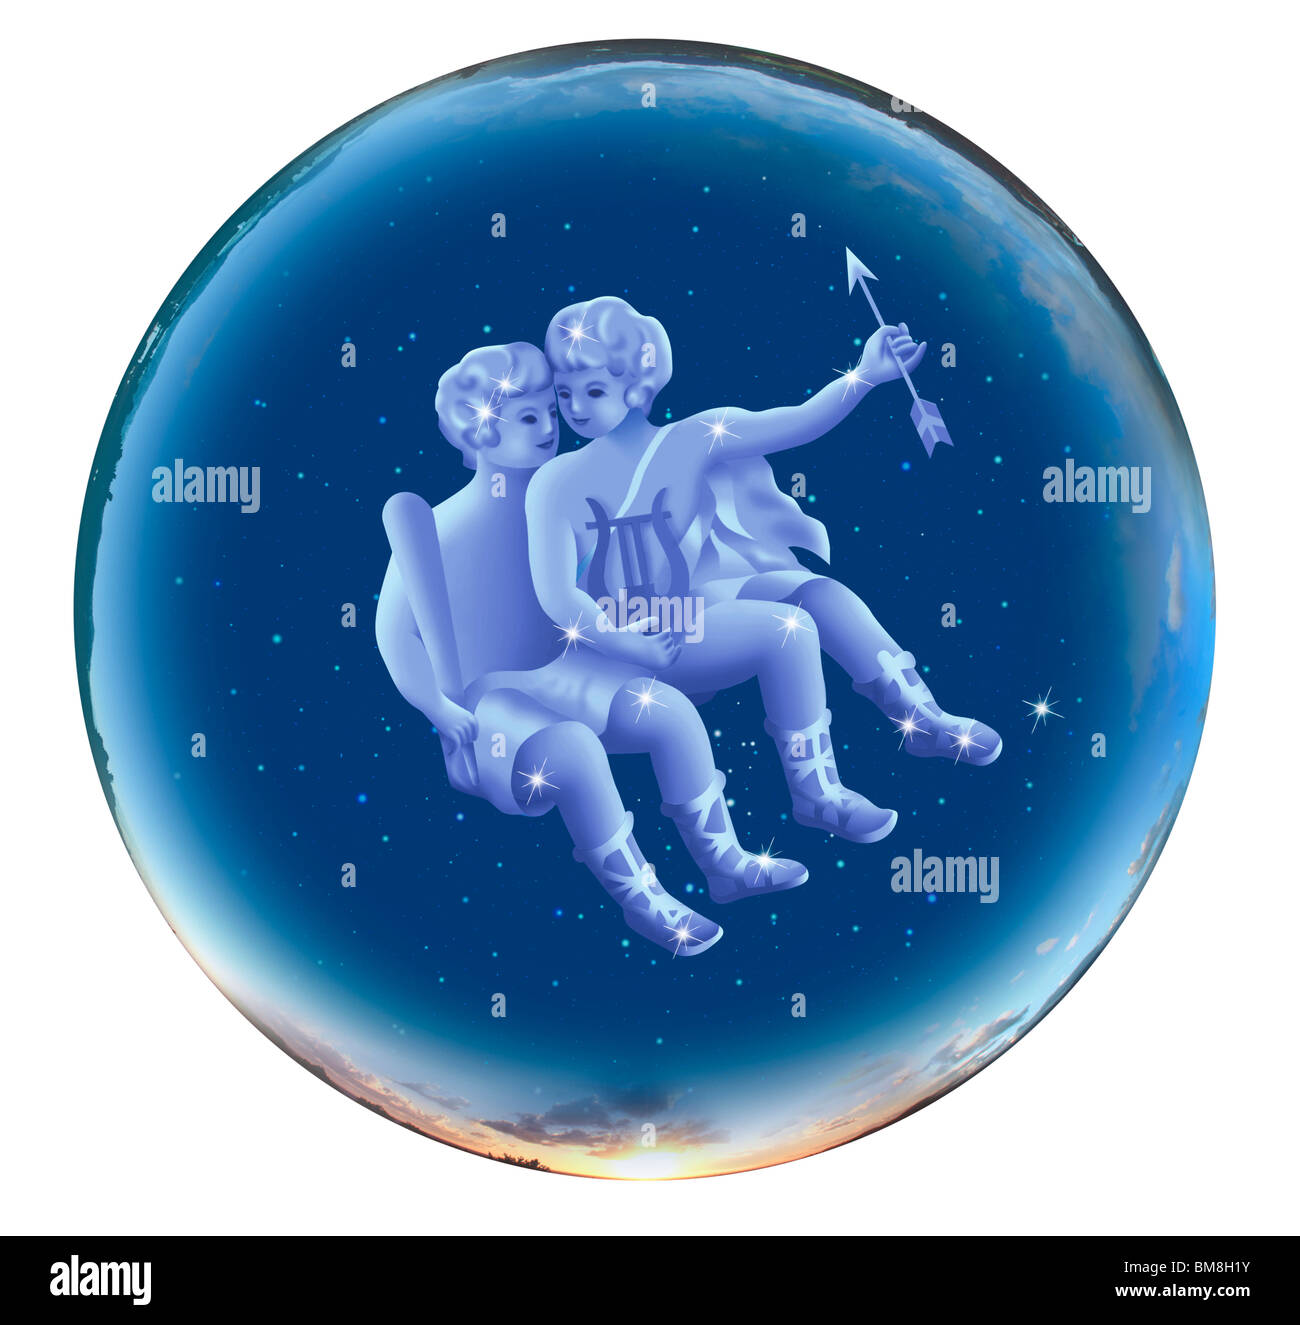 Immagine del segno di astrologia, Gemini, sfondo bianco Foto Stock